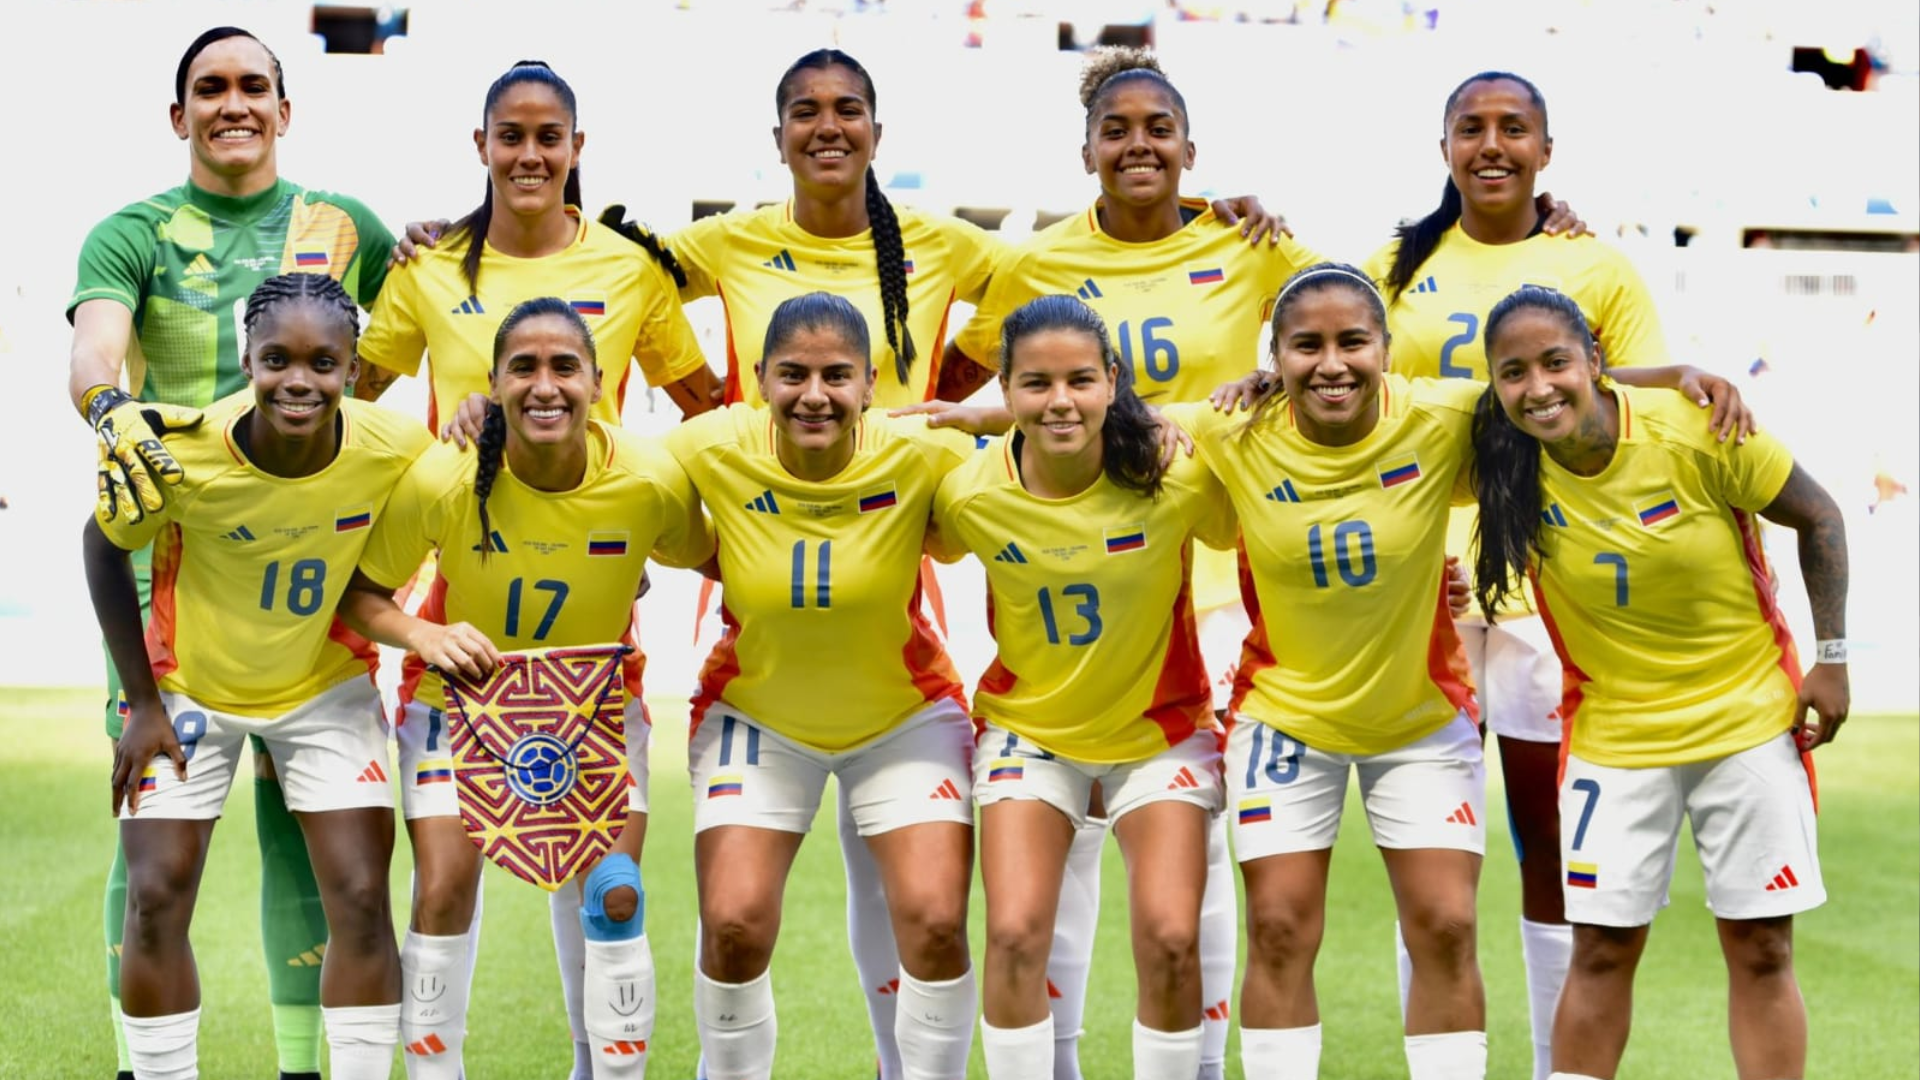 El último partido de la fase de grupos será a las 2 p.m. de la tarde, en simultánea se jugará Francia vs. Nueva Zelanda para definir los clasificados por el grupo A. Foto cortesía: Federación Colombia de Fútbol.